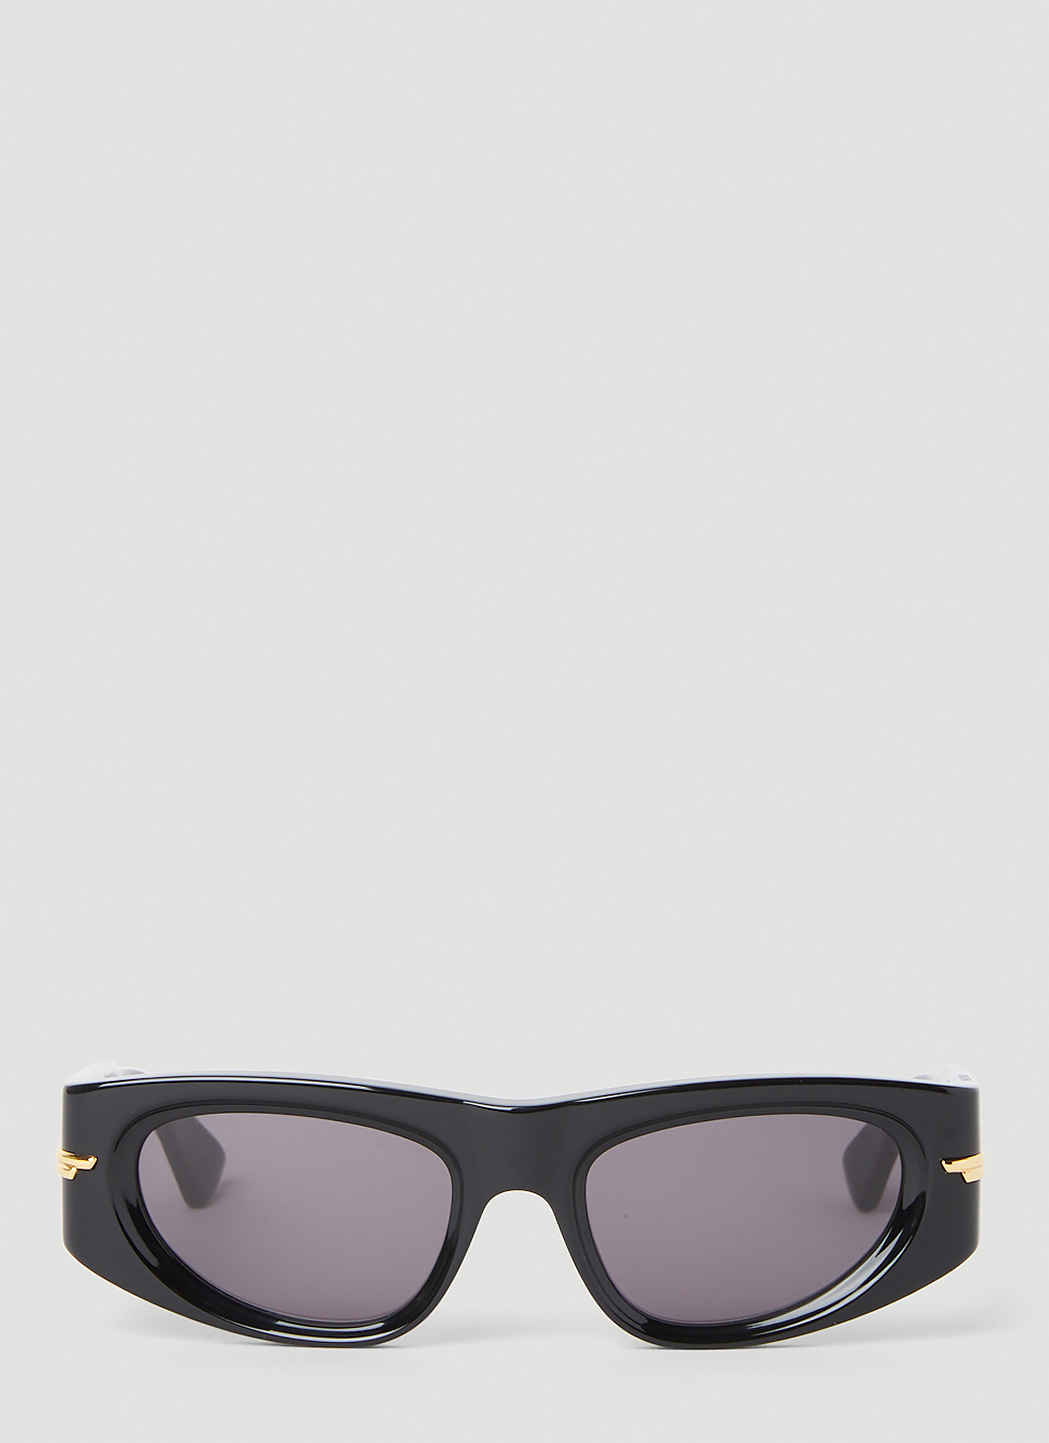 BV1144s Cat Eye Sunglasses